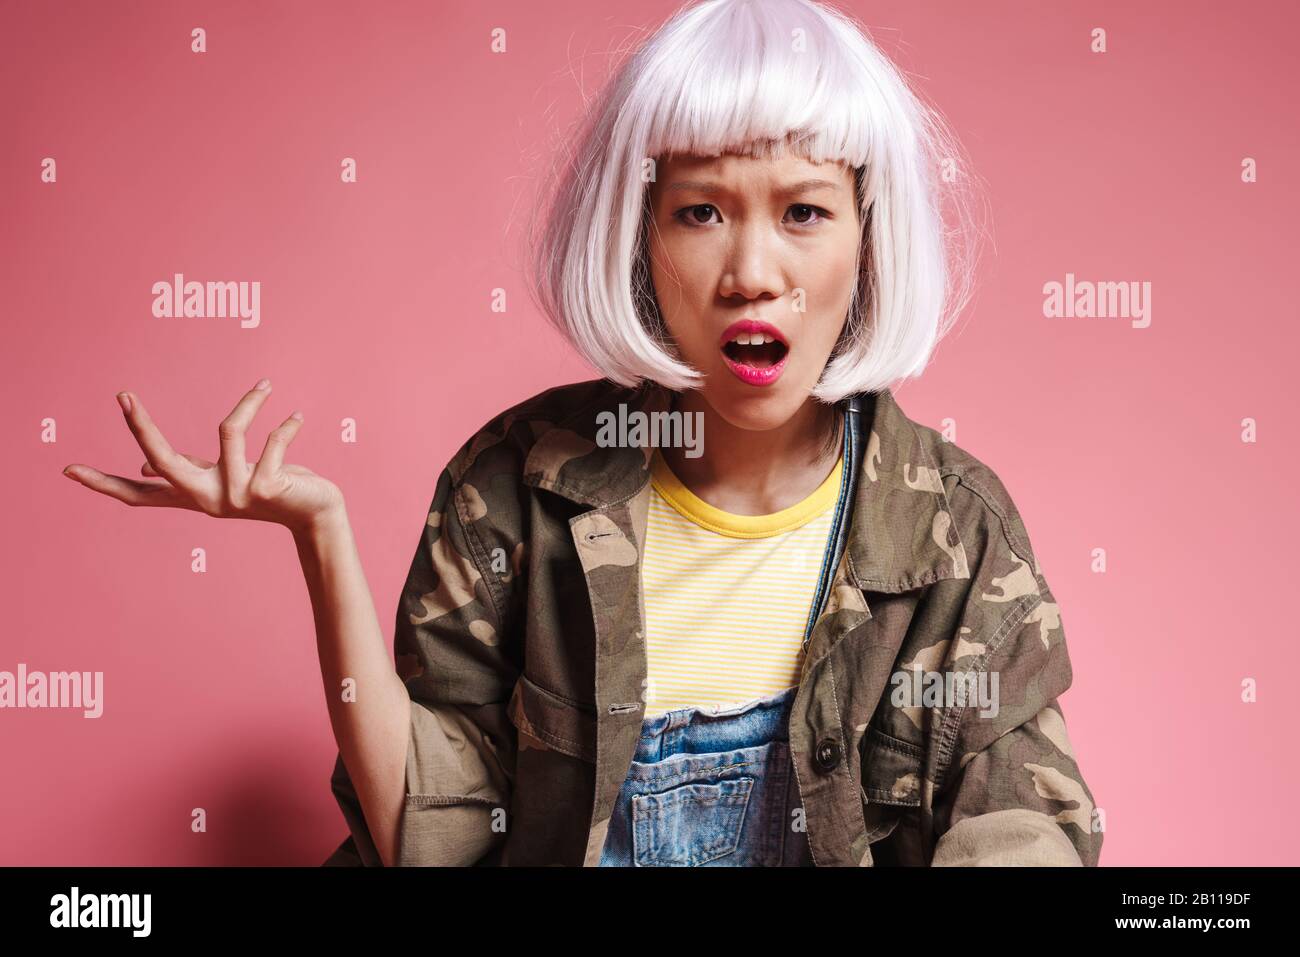 Bild eines empörten asiatischen Mädchens, das weiße Perücke trägt, die in der Empörung über rosafarbenem Hintergrund verärgt und gestikuliert wurde Stockfoto